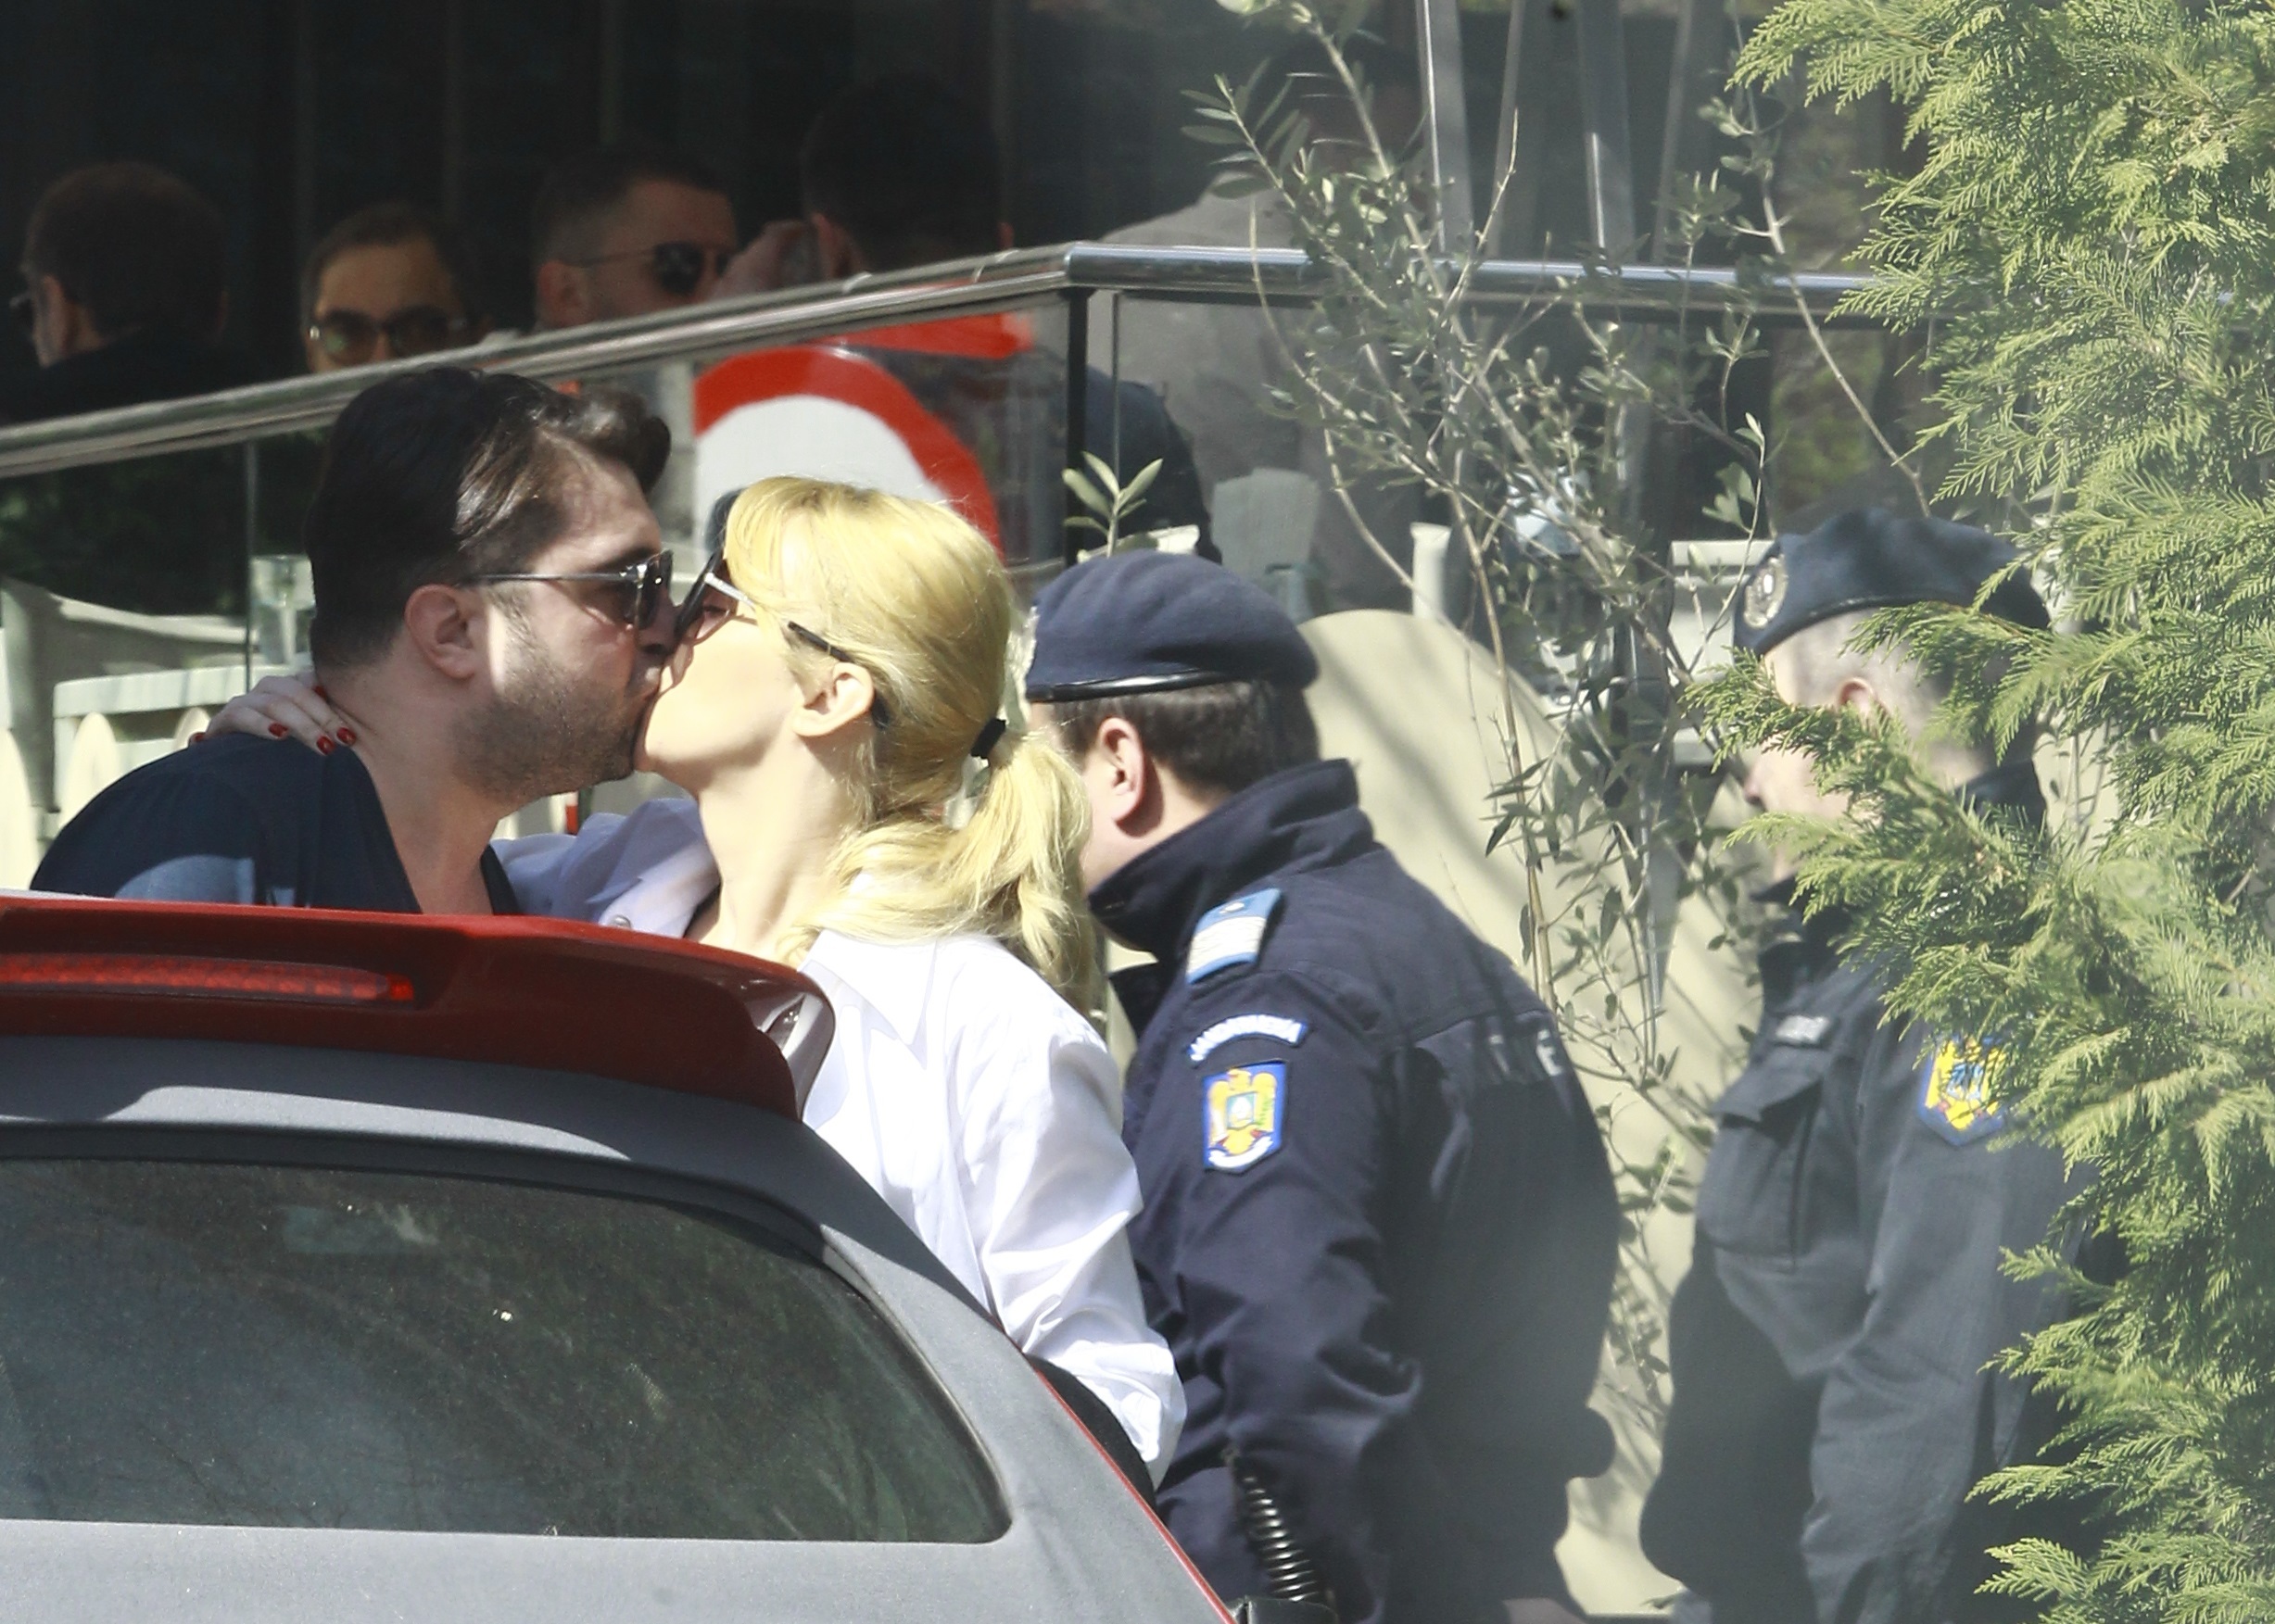 La despărţire, Diana Dumitrescu şi Alin Boroi s-au sărutat franţuzeşte minute în şir